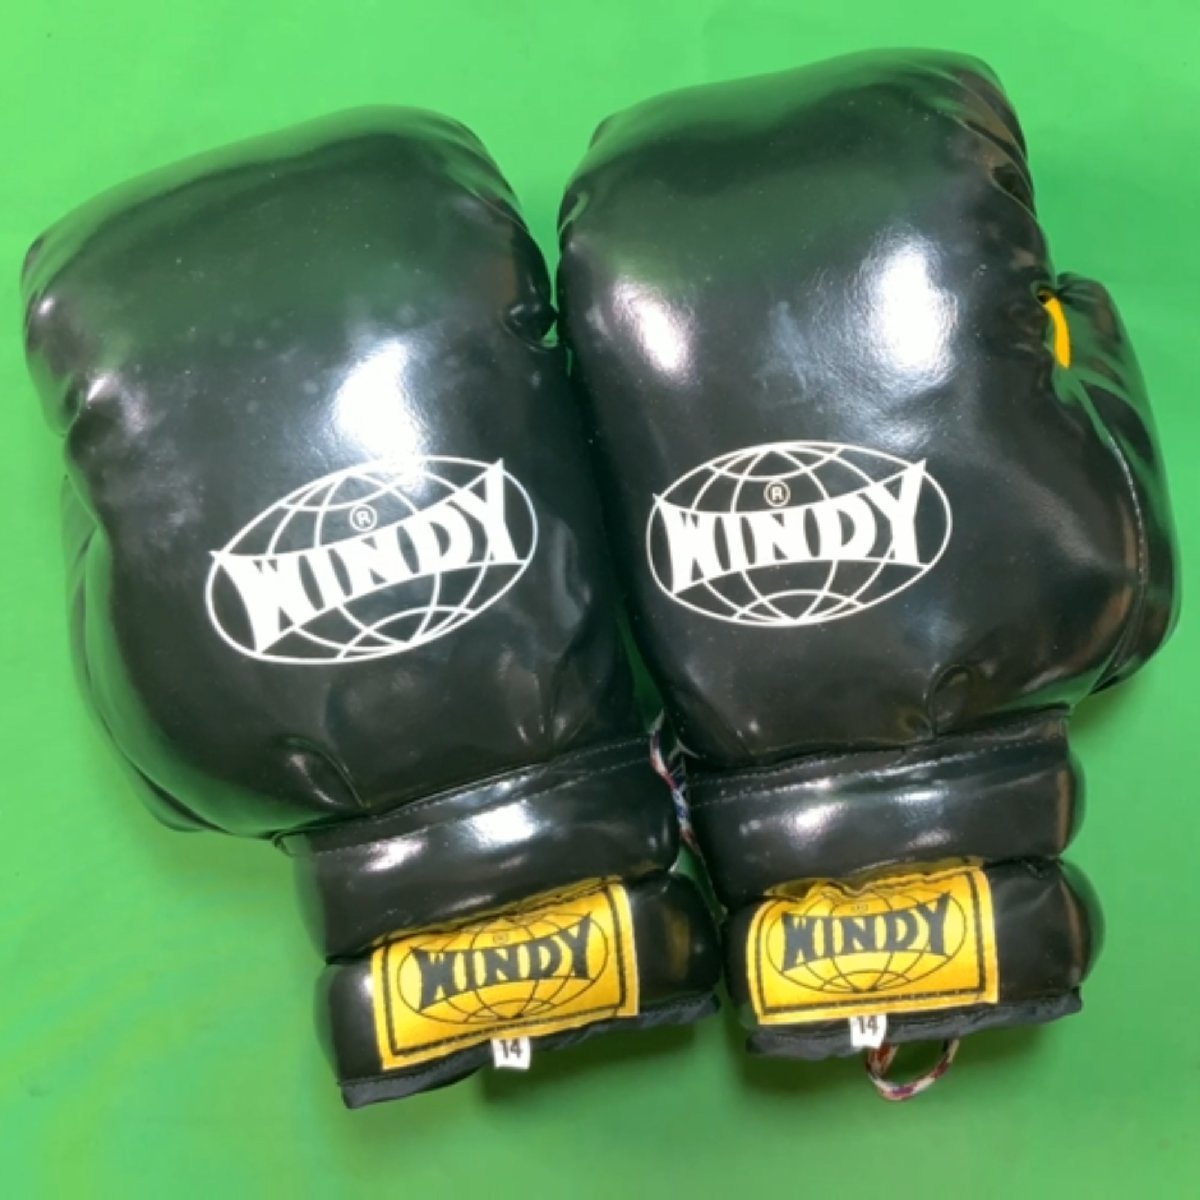 WINDY ボクシンググローブ サイズ14 黒/黄 ウィンディ 紐付き_画像1